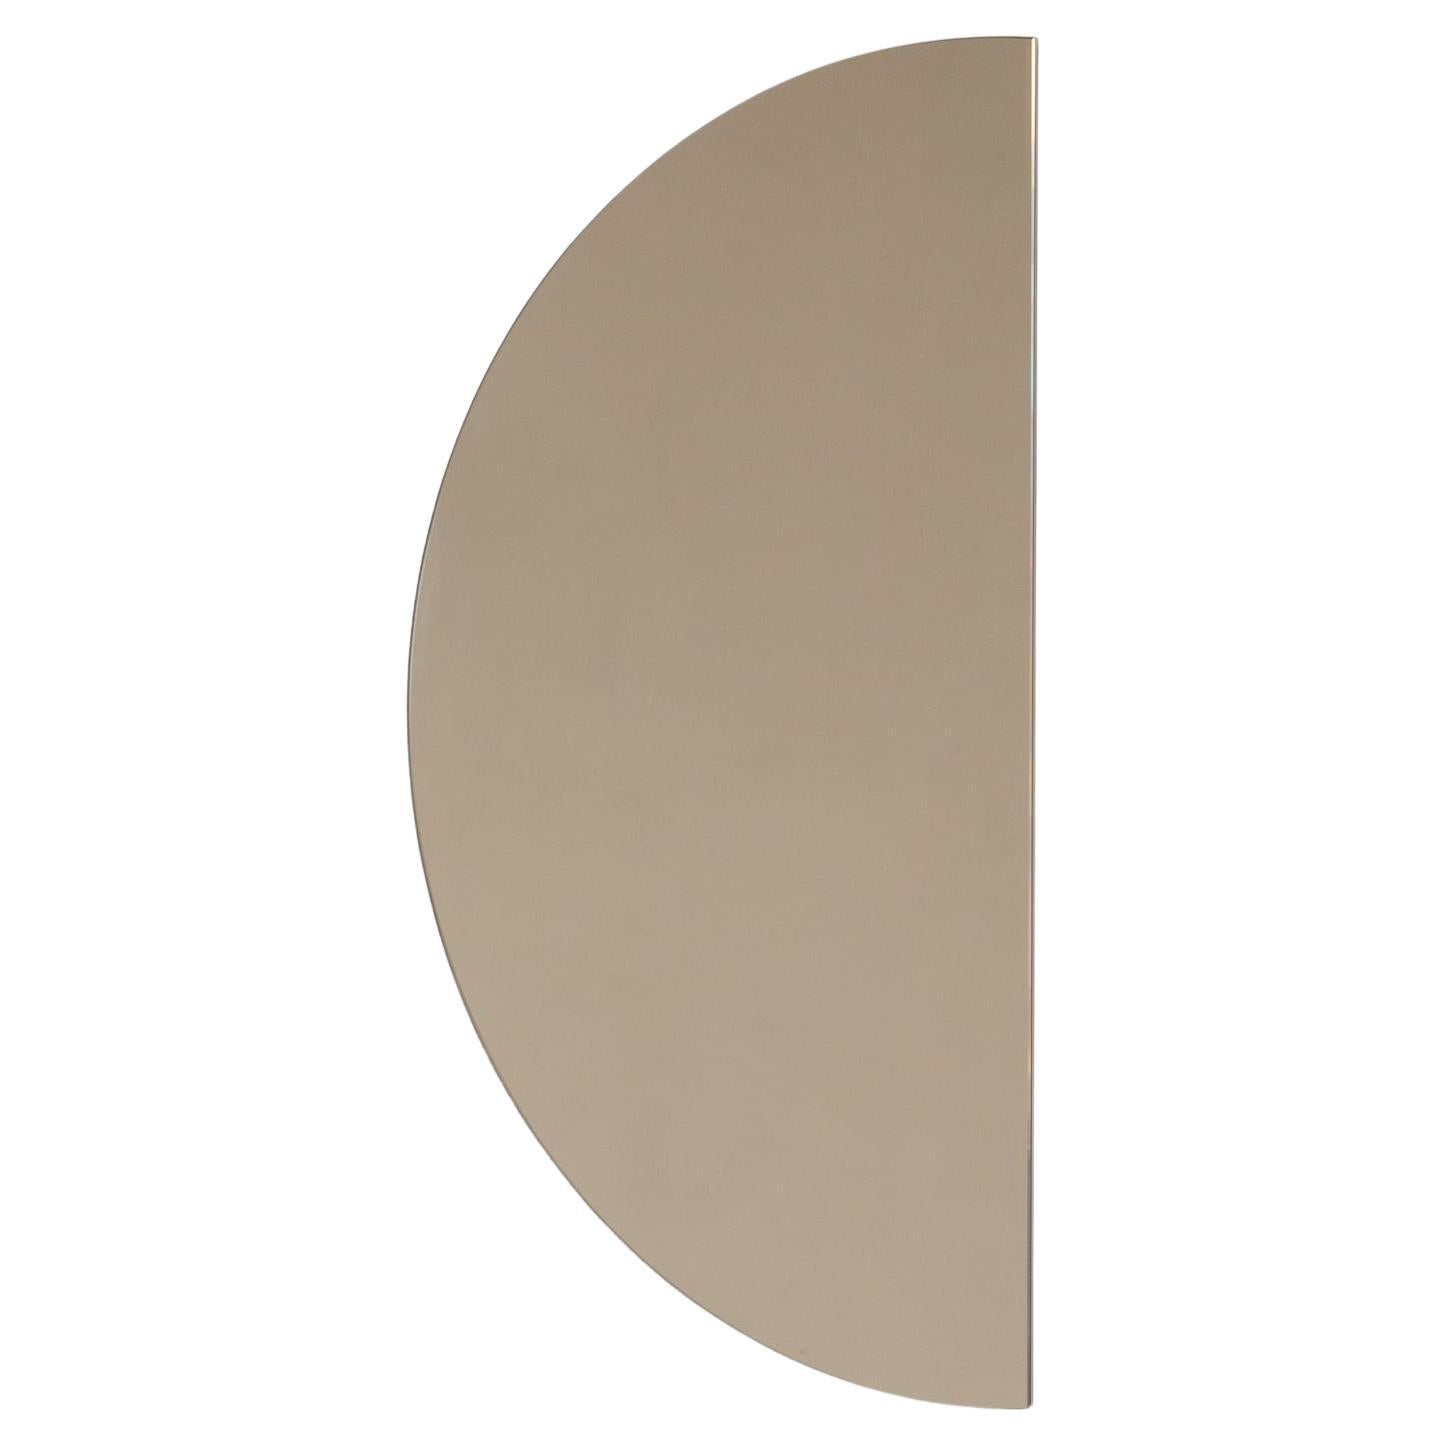 Luna-Halbmond, minimalistischer, bronzefarben getönter, halbkreisförmiger, rahmenloser Spiegel, XL